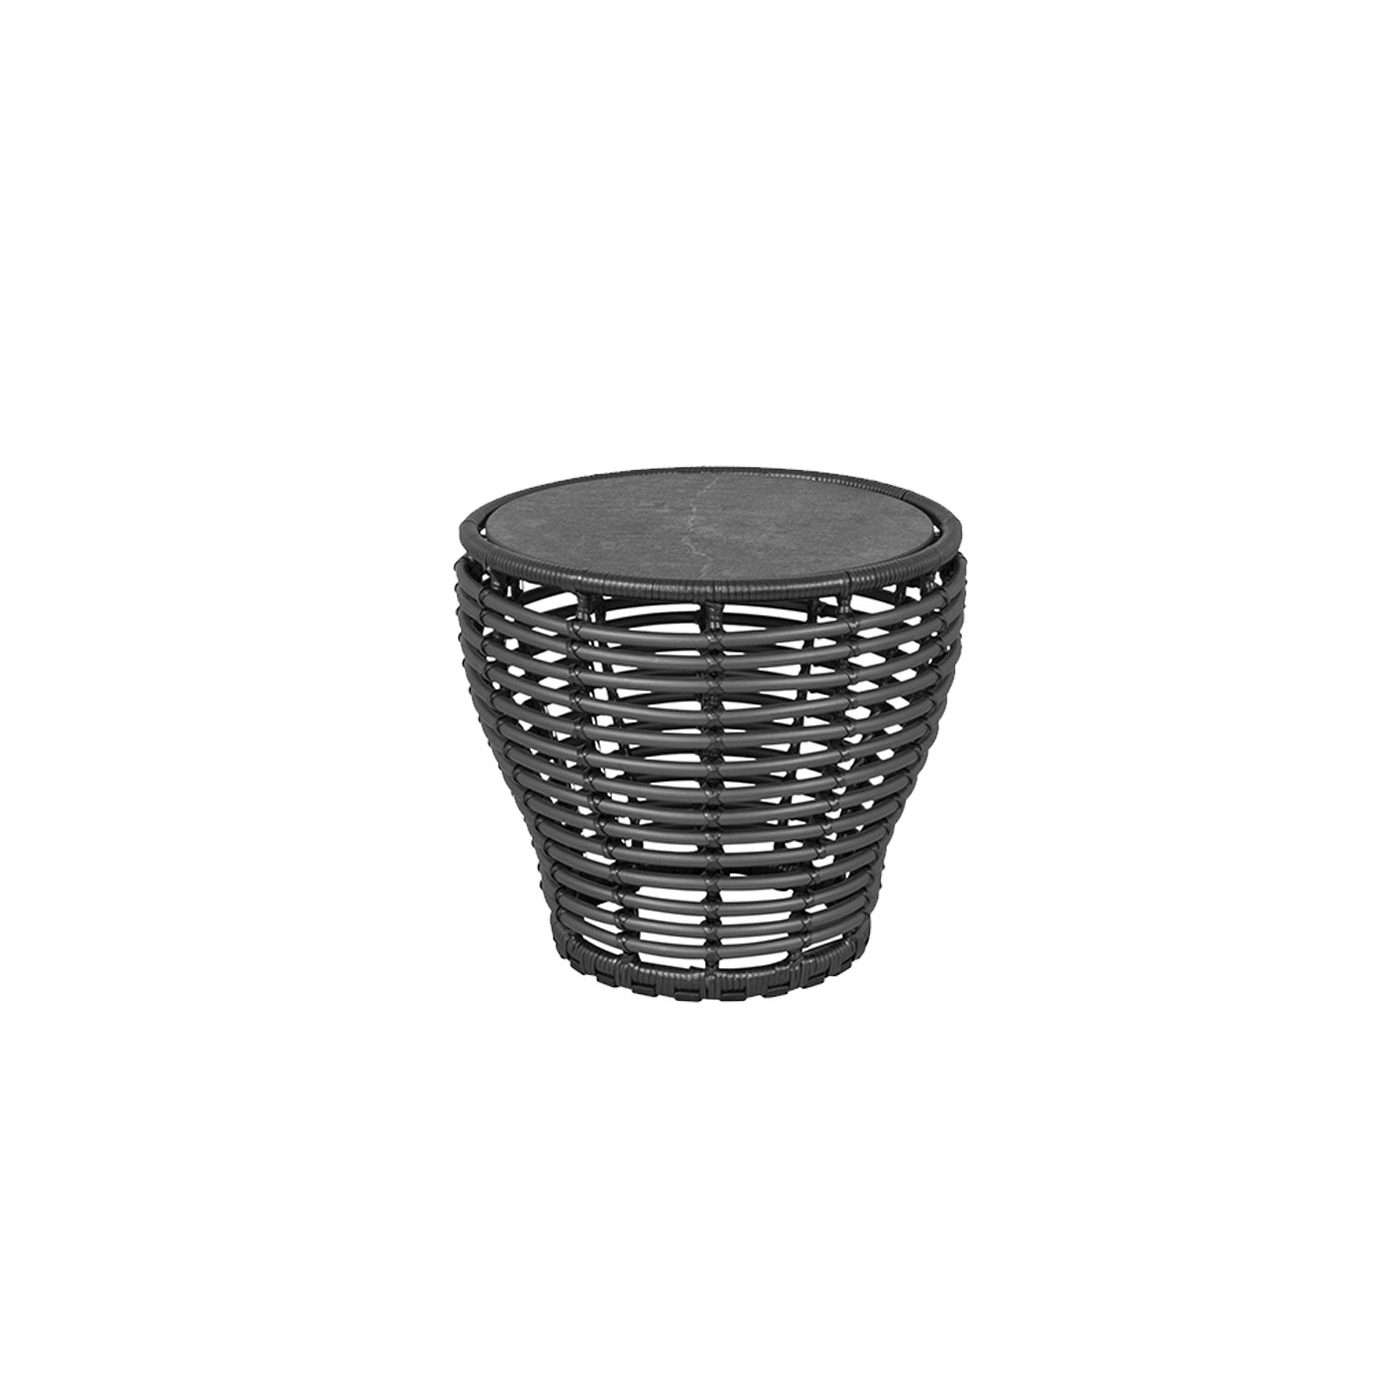 Cane-line "Basket" Loungetisch klein, Geflecht graphit, Tischplatte Keramik schwarz, Ø 50 cm